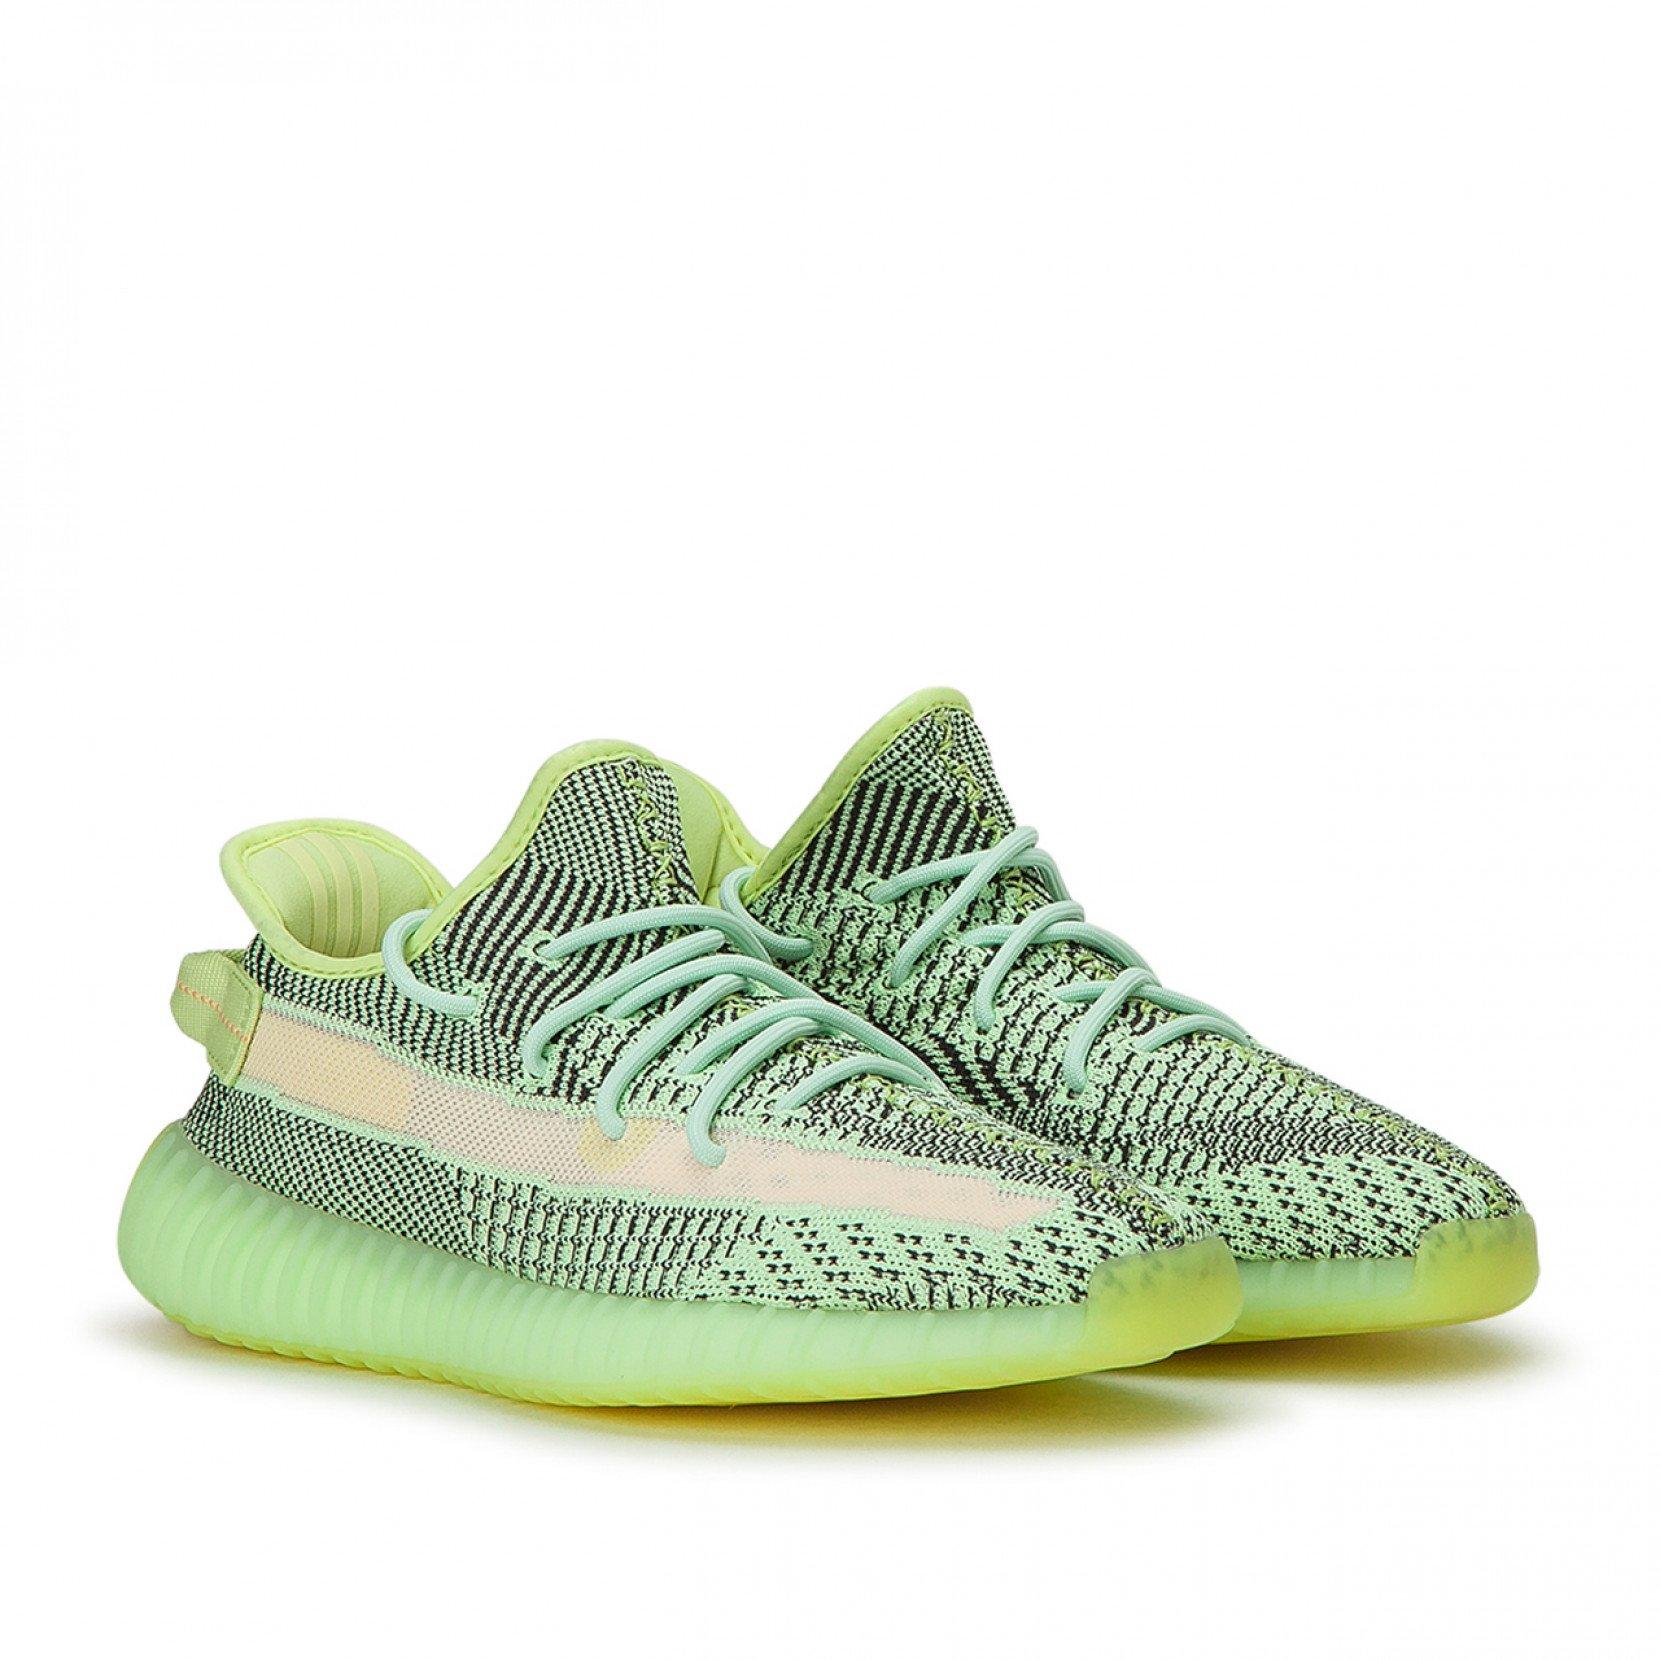 adidas yeezy neon green